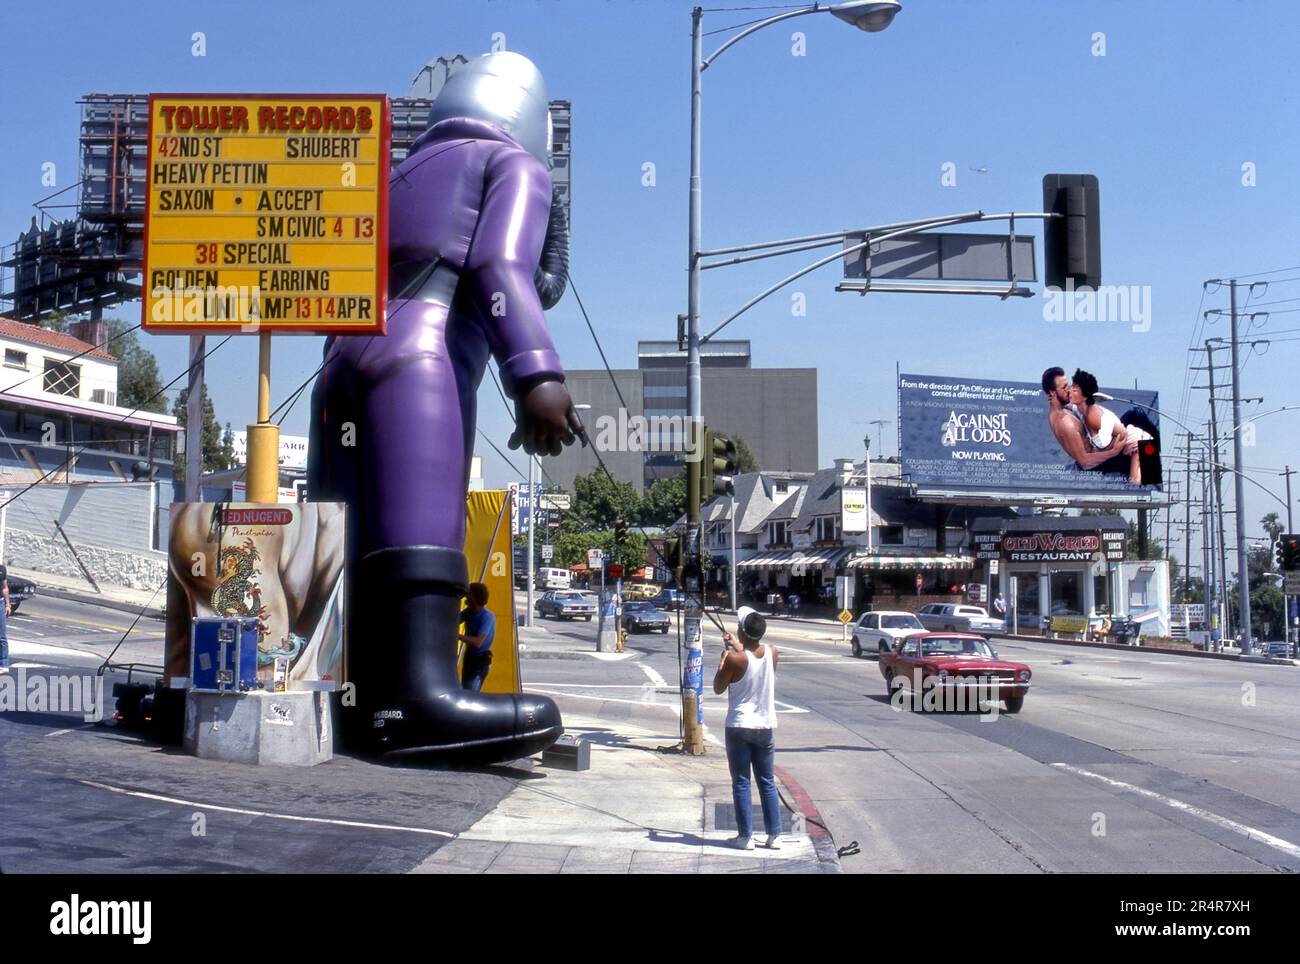 Un operaio che installa un pallone gonfiabile di pubblicità di fronte alla Tower Records sulla Sunset Strip di Los Angeles, California Foto Stock